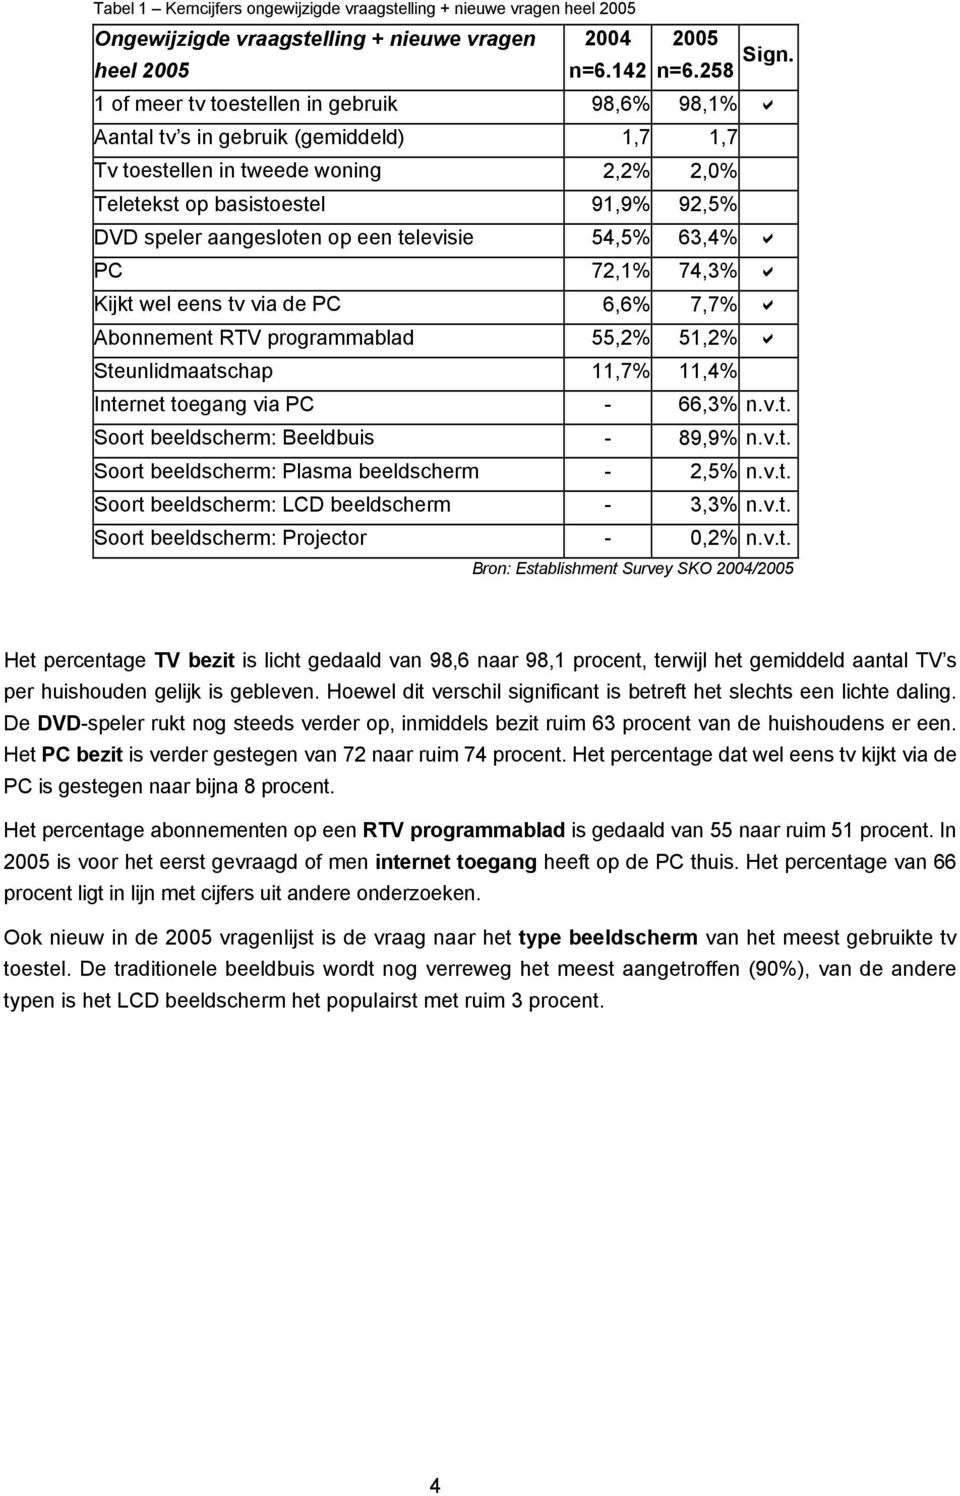 televisie 54,5% 63,4% PC 72,1% 74,3% Kijkt wel eens tv via de PC 6,6% 7,7% Abonnement RTV programmablad 55,2% 51,2% Steunlidmaatschap 11,7% 11,4% Internet toegang via PC - 66,3% n.v.t. Soort beeldscherm: Beeldbuis - 89,9% n.